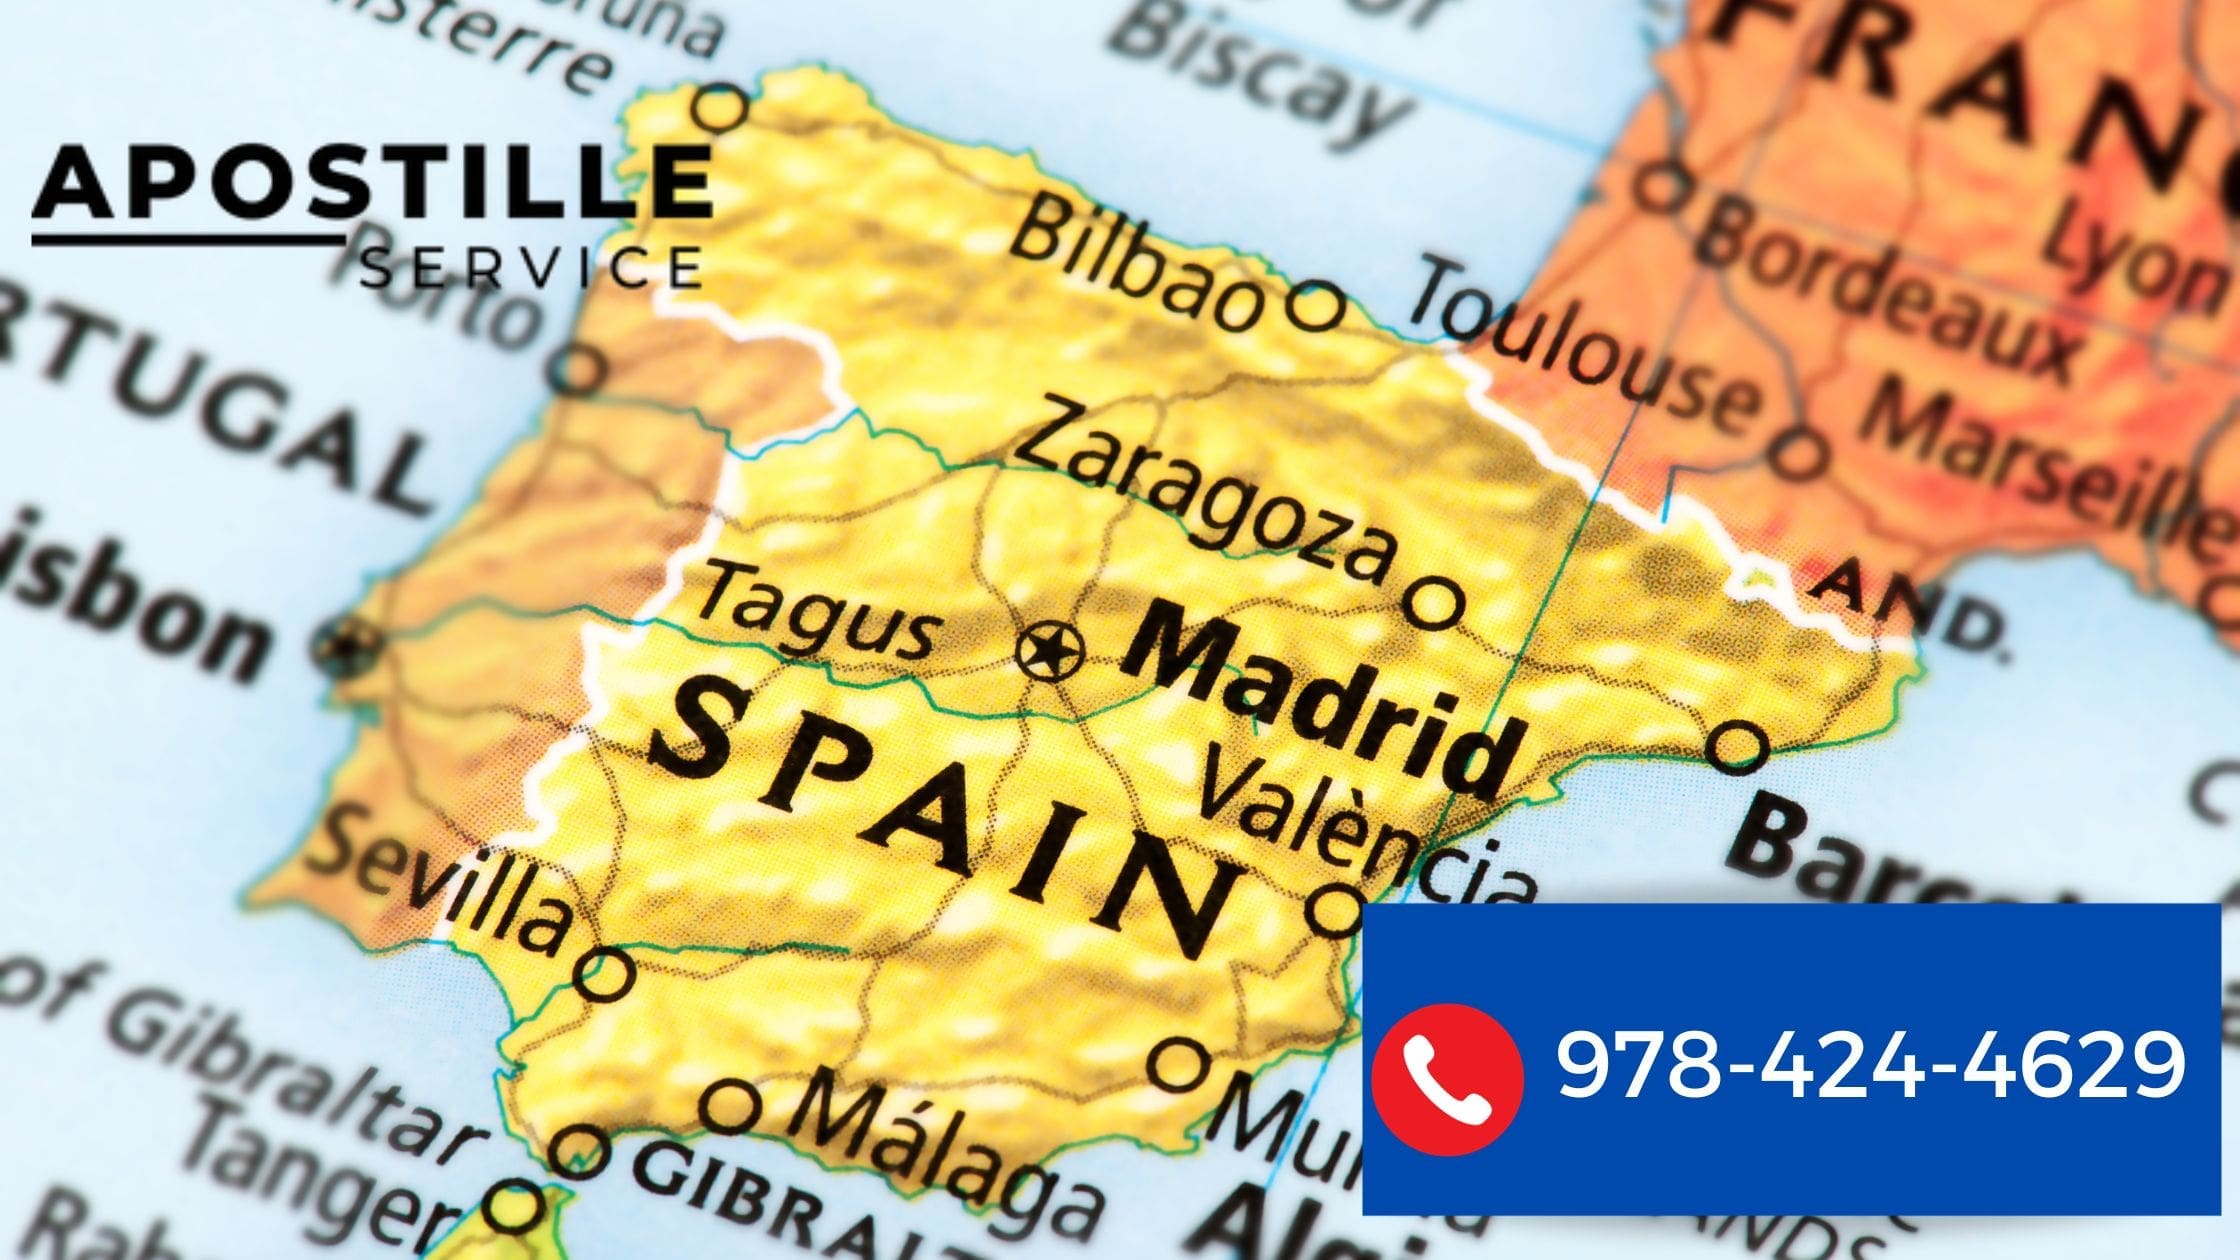 Servicio de Apostilla para España desde Massachusetts: Tu Guía Completa